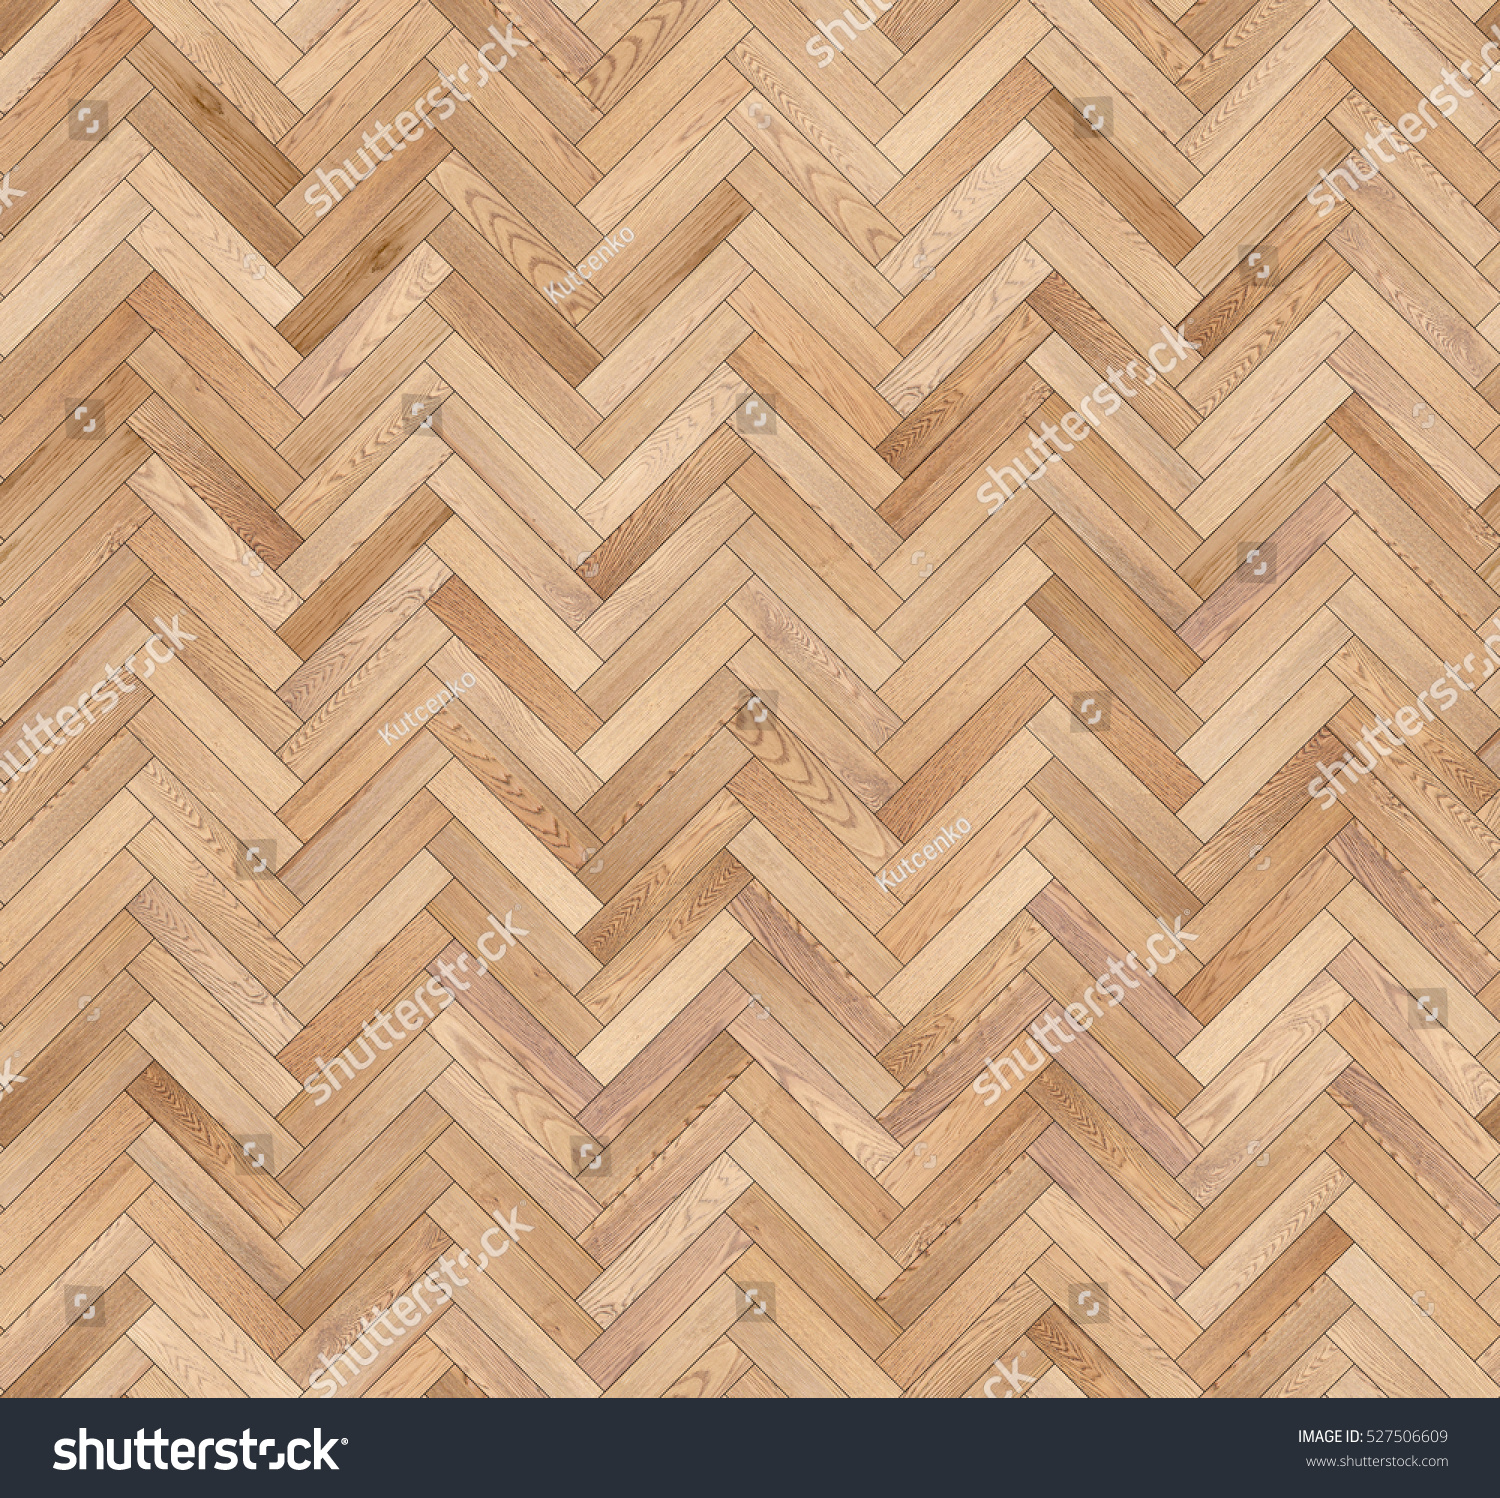 Herringbone natural parquet seamless floor texture #527506609